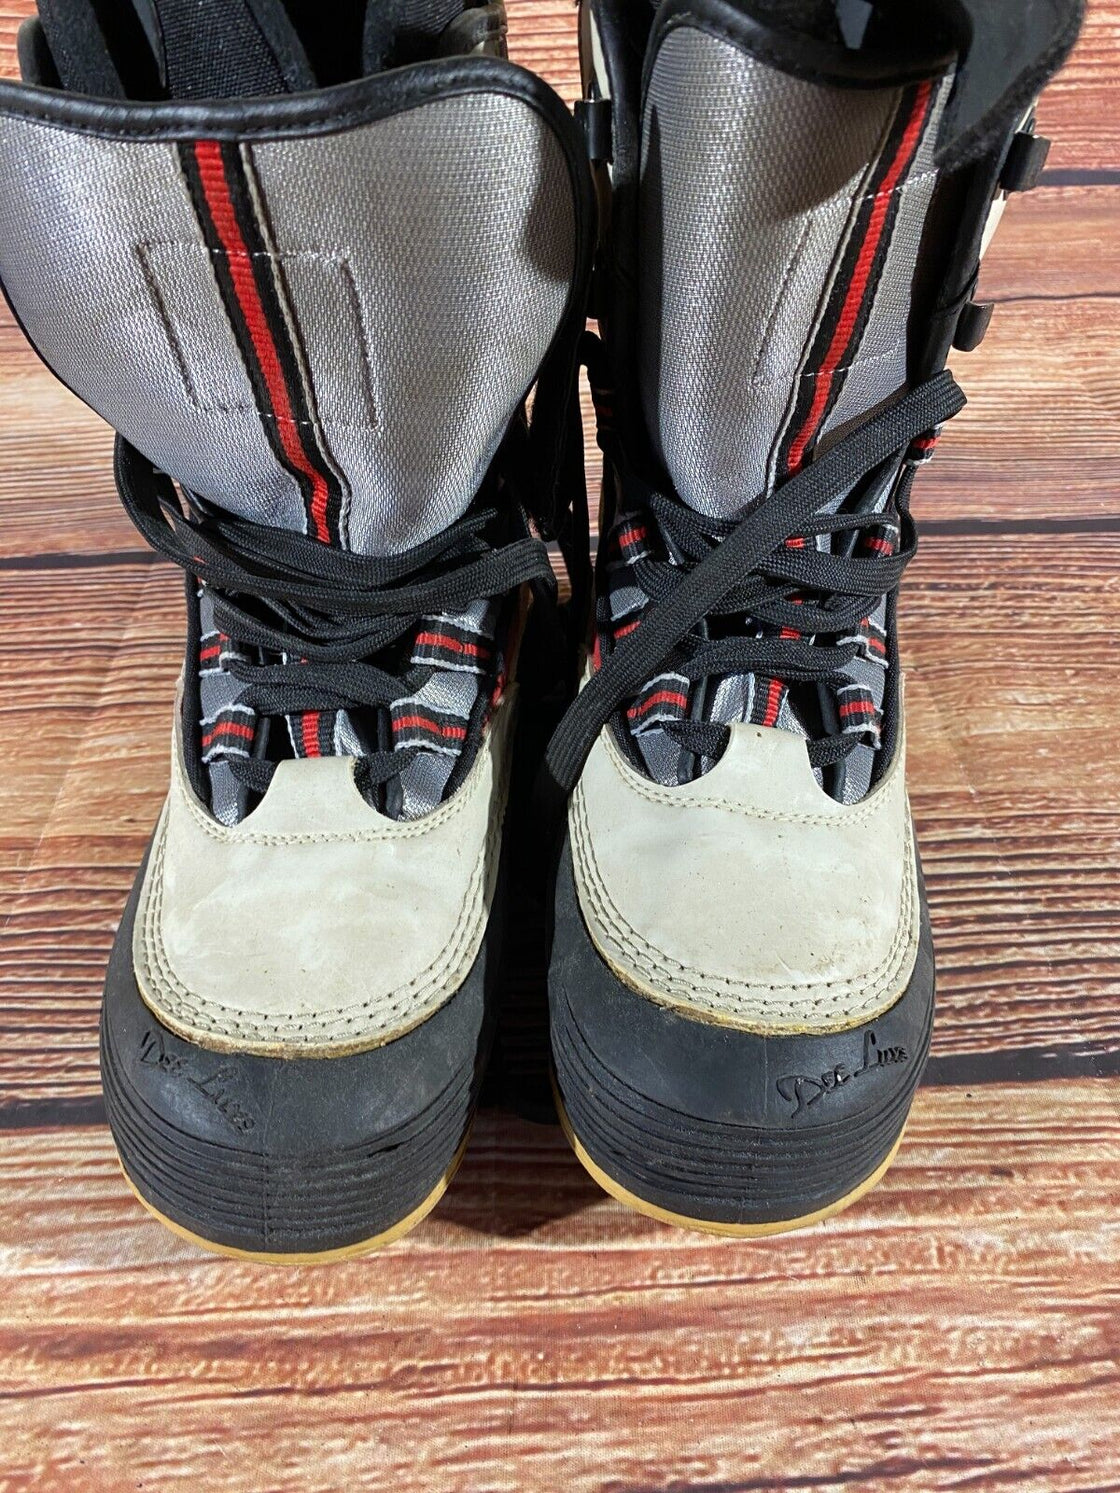 DEELUXE Vintage Snowboard Boots Size EU40.5, US8, UK7, Mondo 255 mm